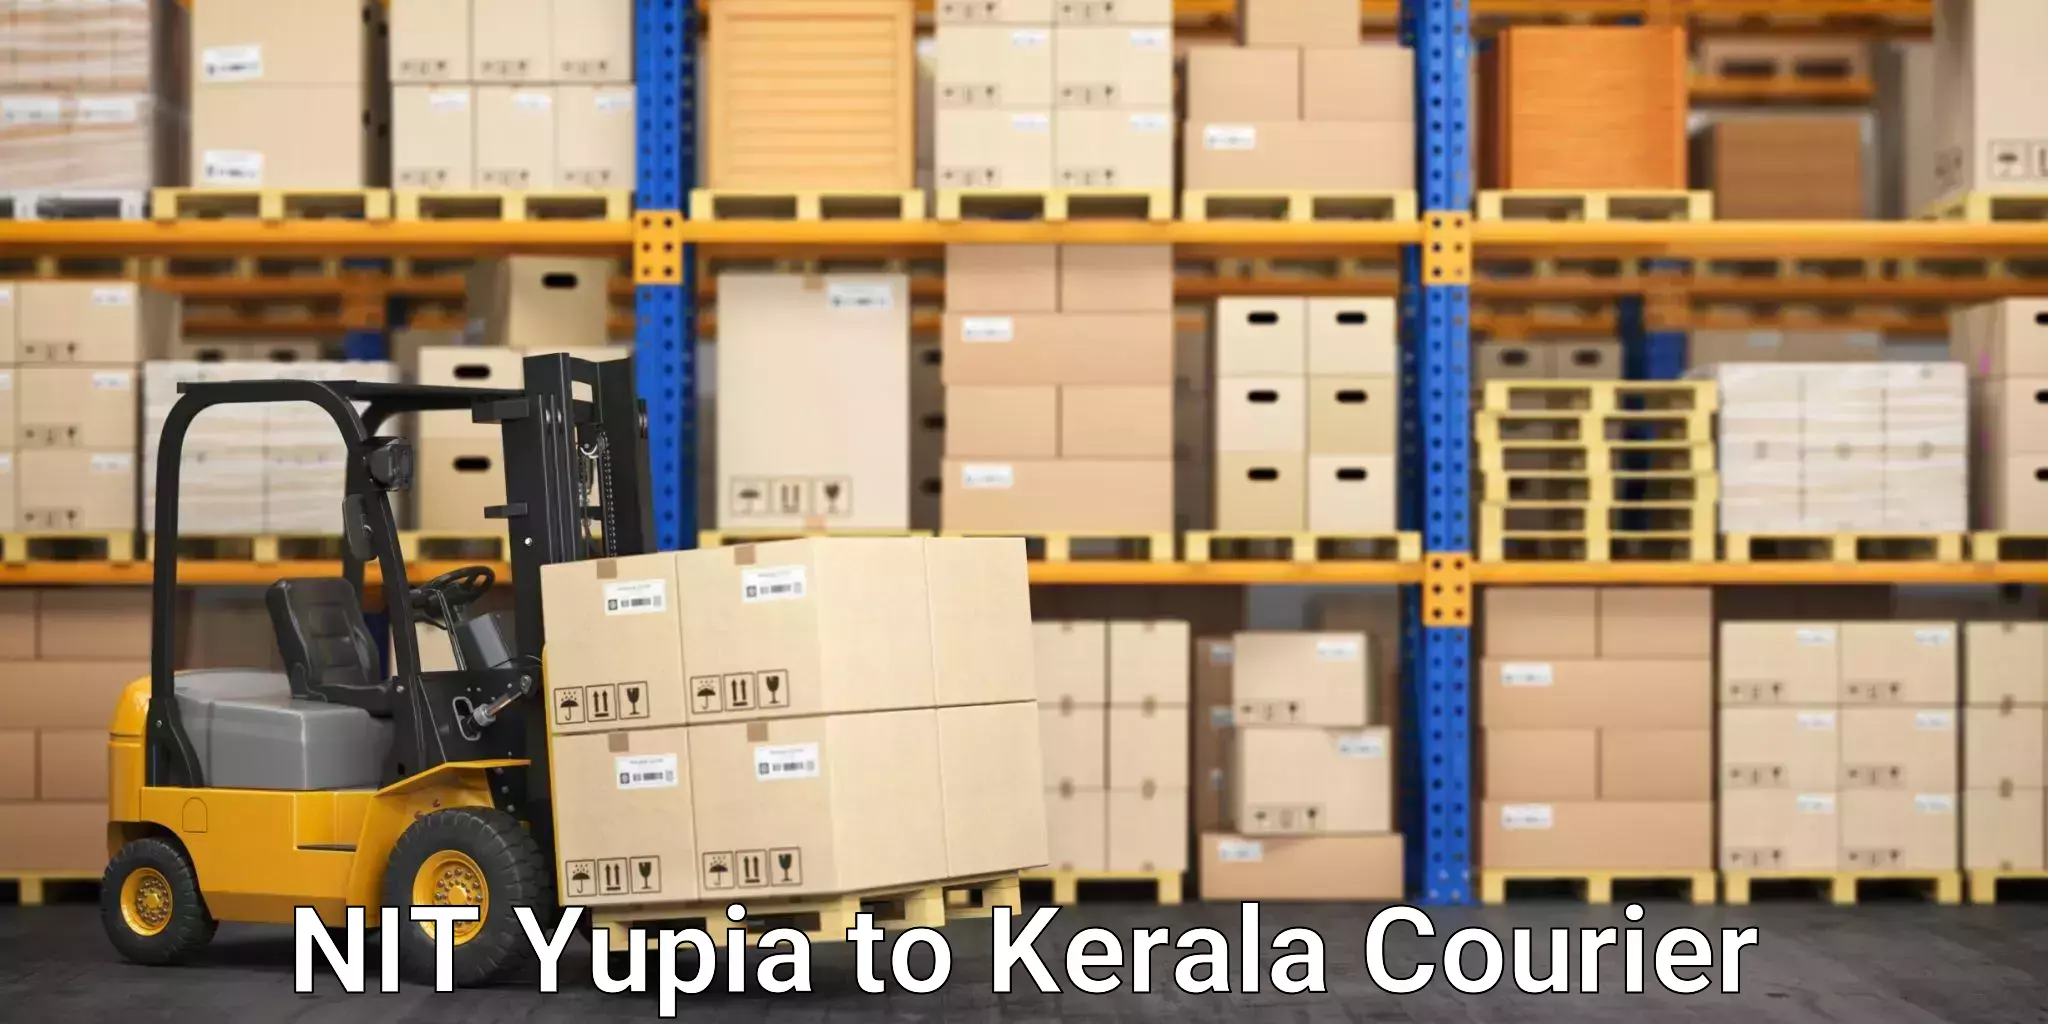 Premium courier services NIT Yupia to Cochin Port Kochi